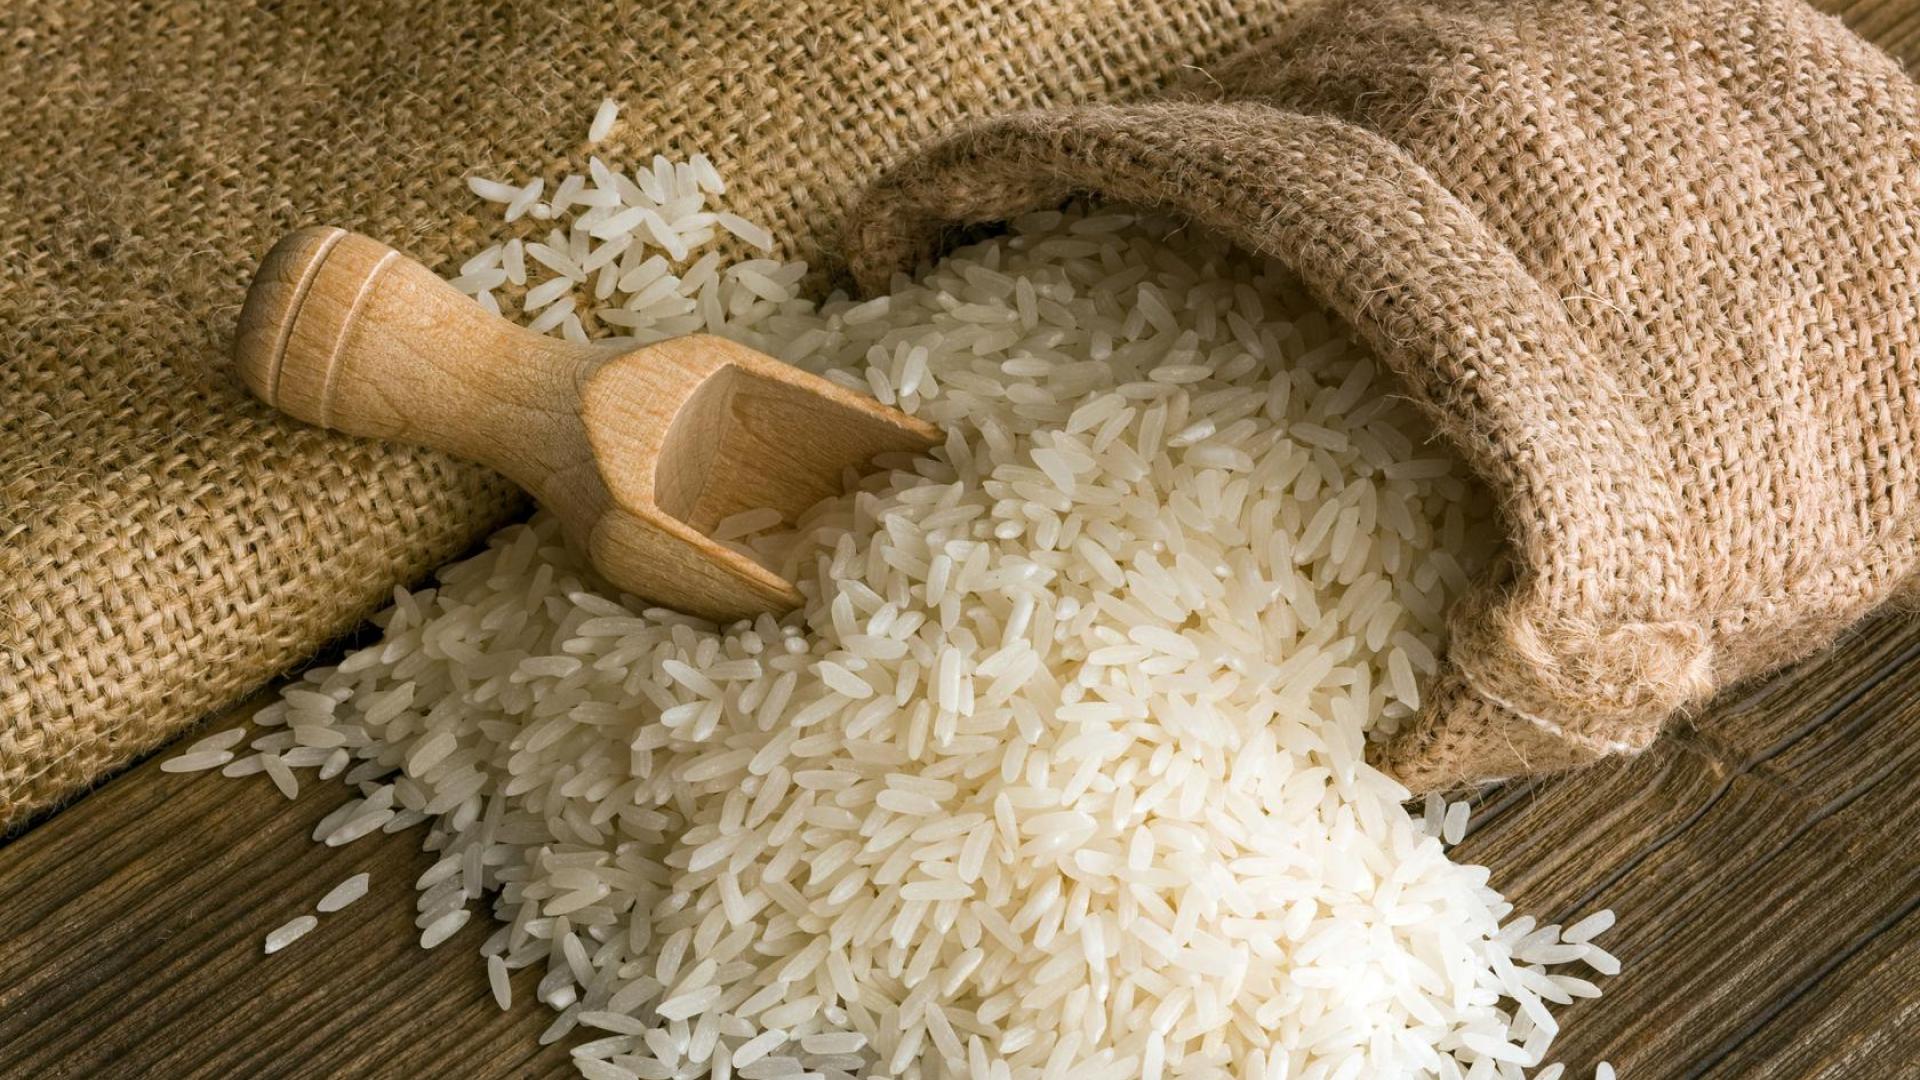 Hướng dẫn Kinh doanh buôn bán gạo Sạch Online (Có nên bán gạo)